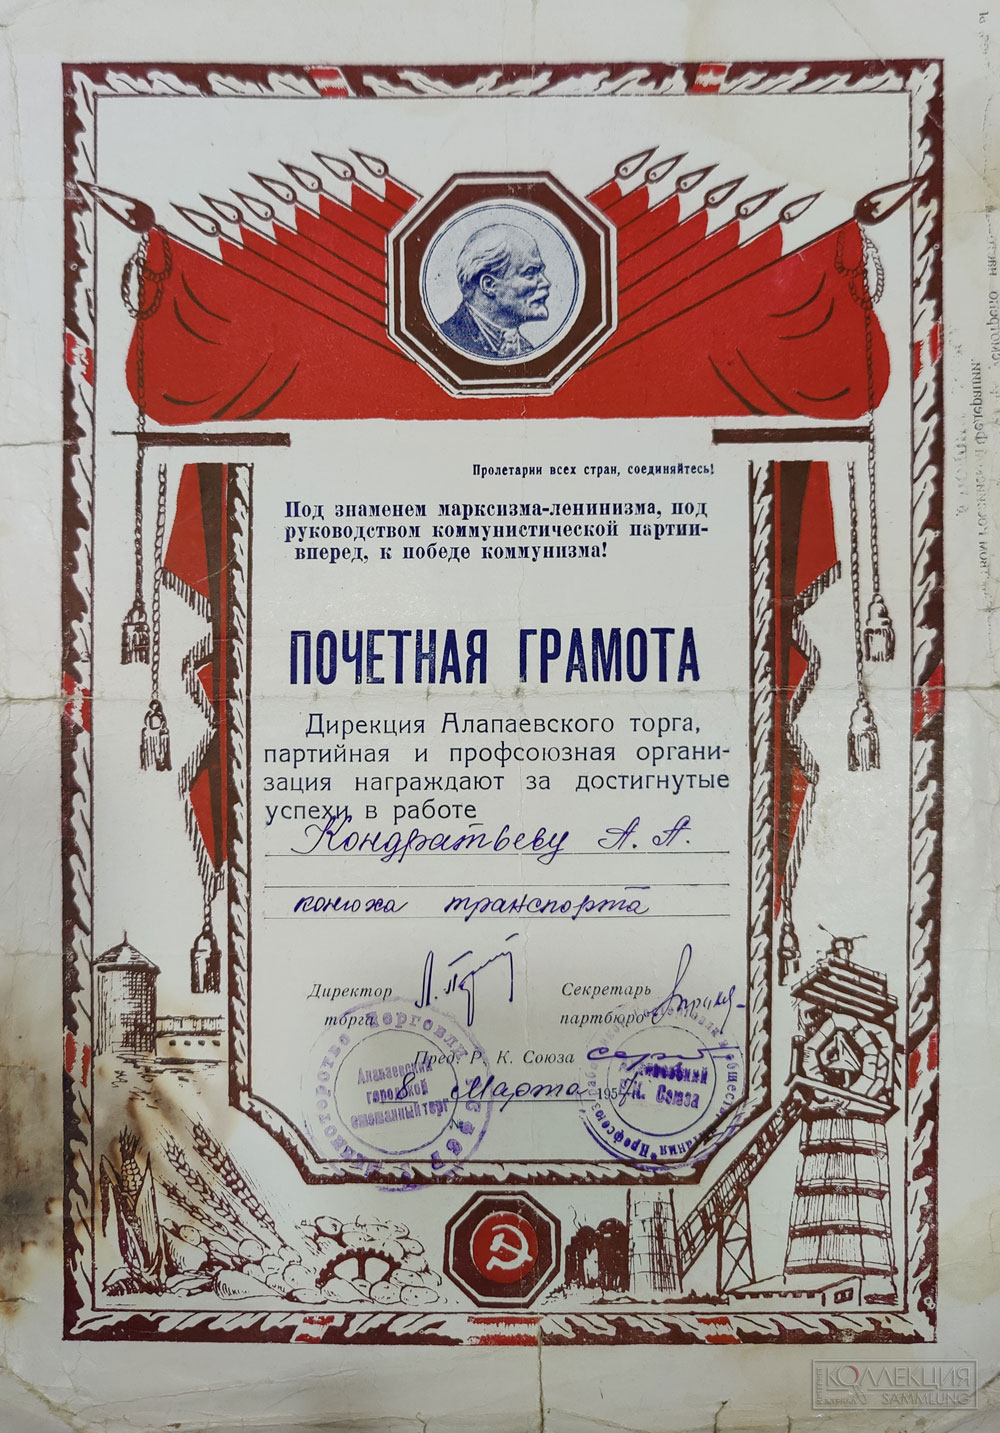 Почётная грамота дирекции Алапаевского торга, выданная в 1957 г.